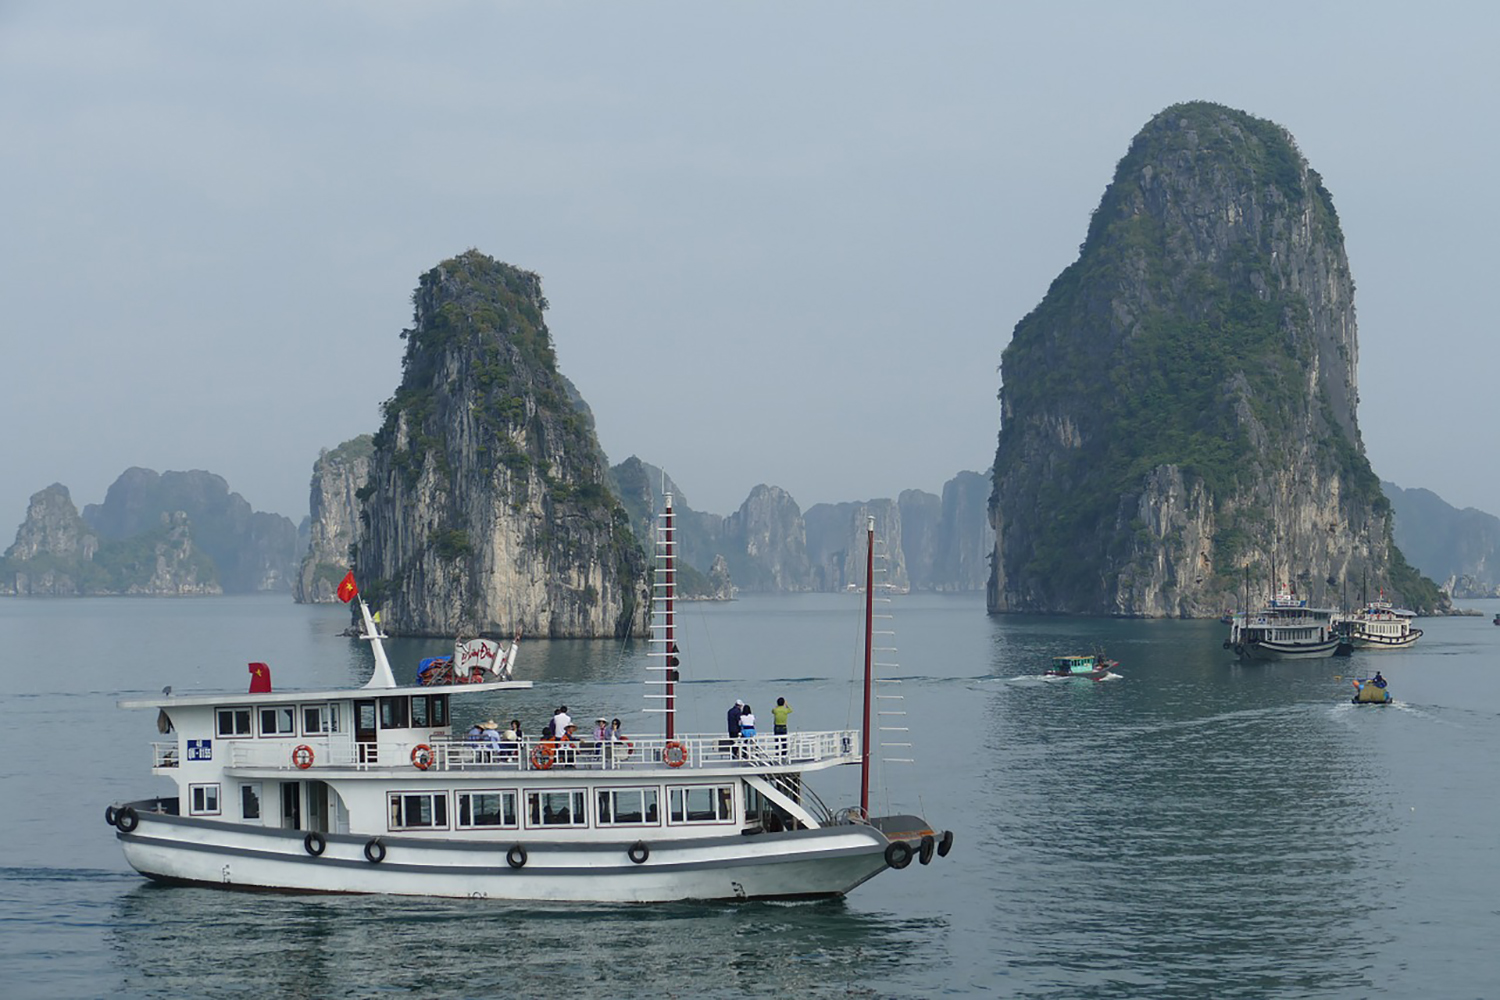 Le Vietnam est en train de durcir ses lois sur la protection du littoral afin de mieux protéger les sites tels que la baie d’Ha Long de l’afflux des touristes, parfois peu soucieux de l’environnement. ©Pixabay Creative Commons CC0